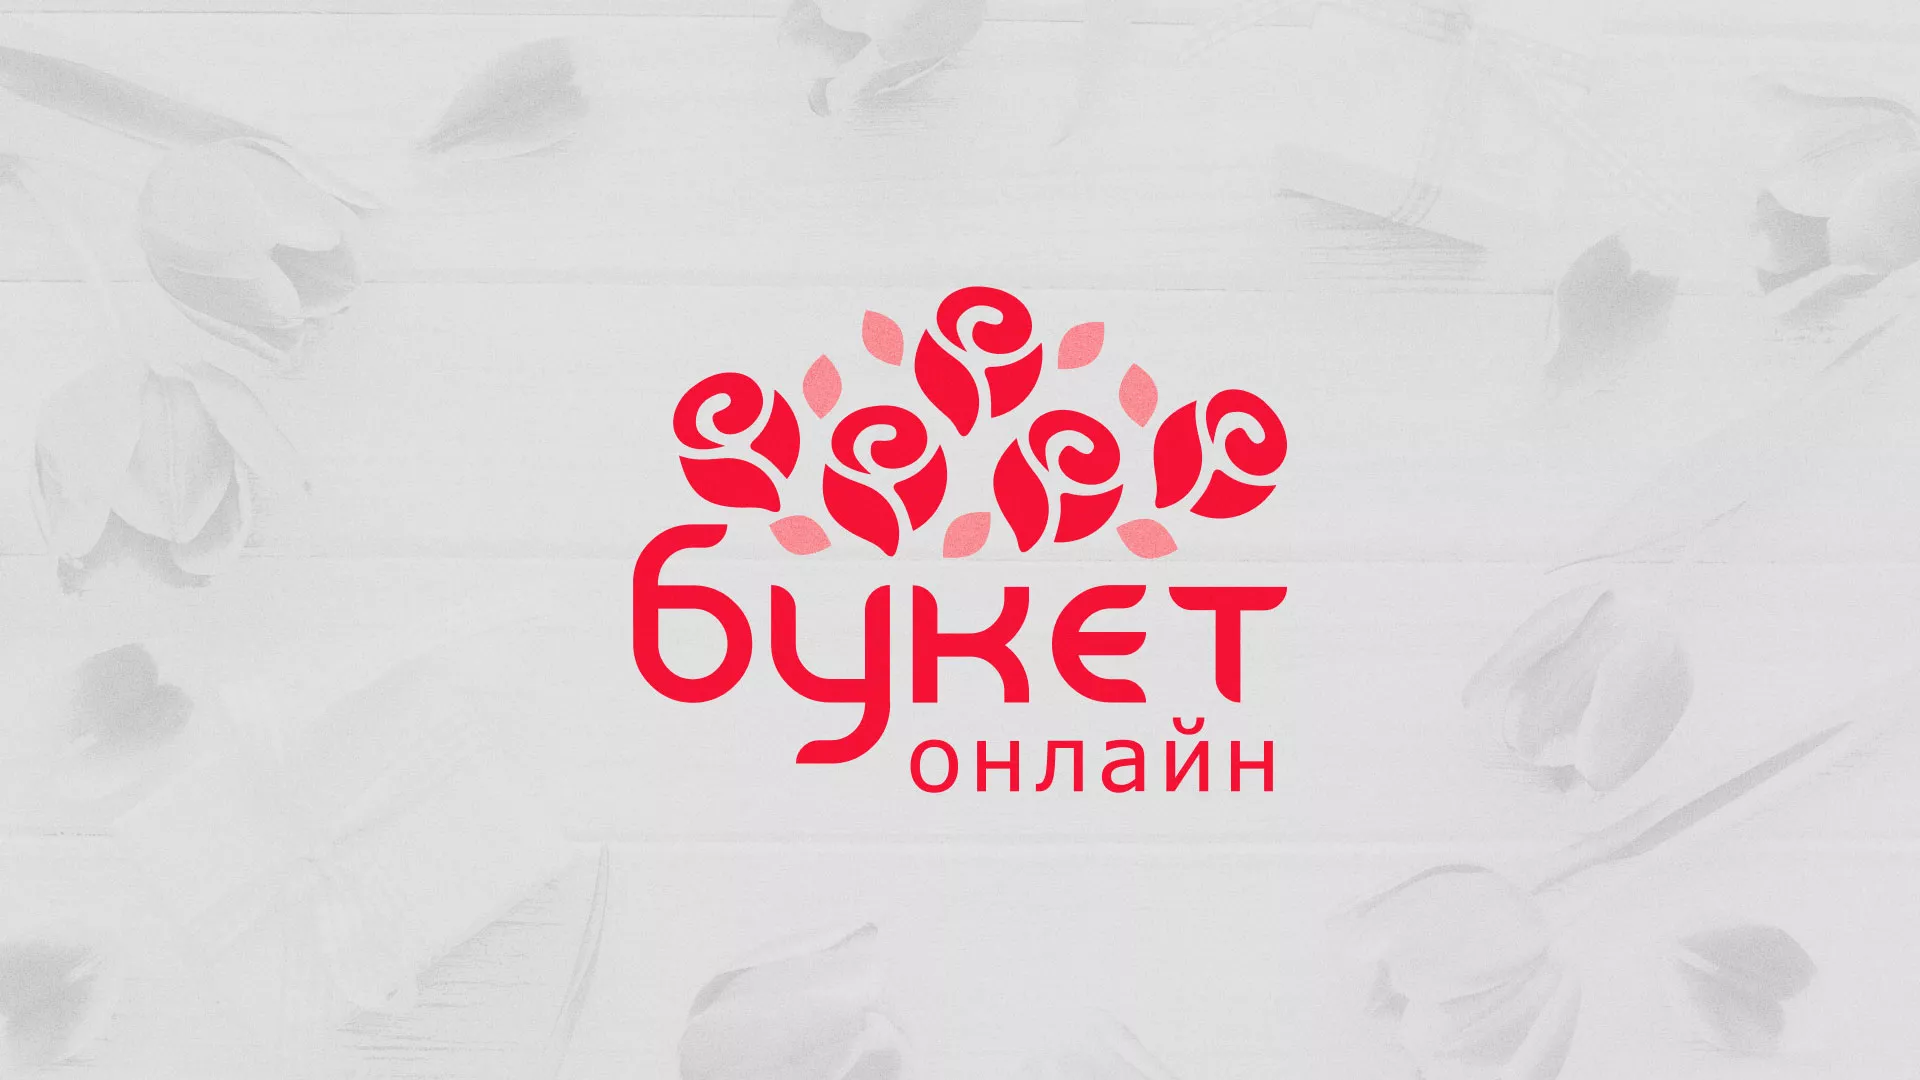 Создание интернет-магазина «Букет-онлайн» по цветам в Высоцке